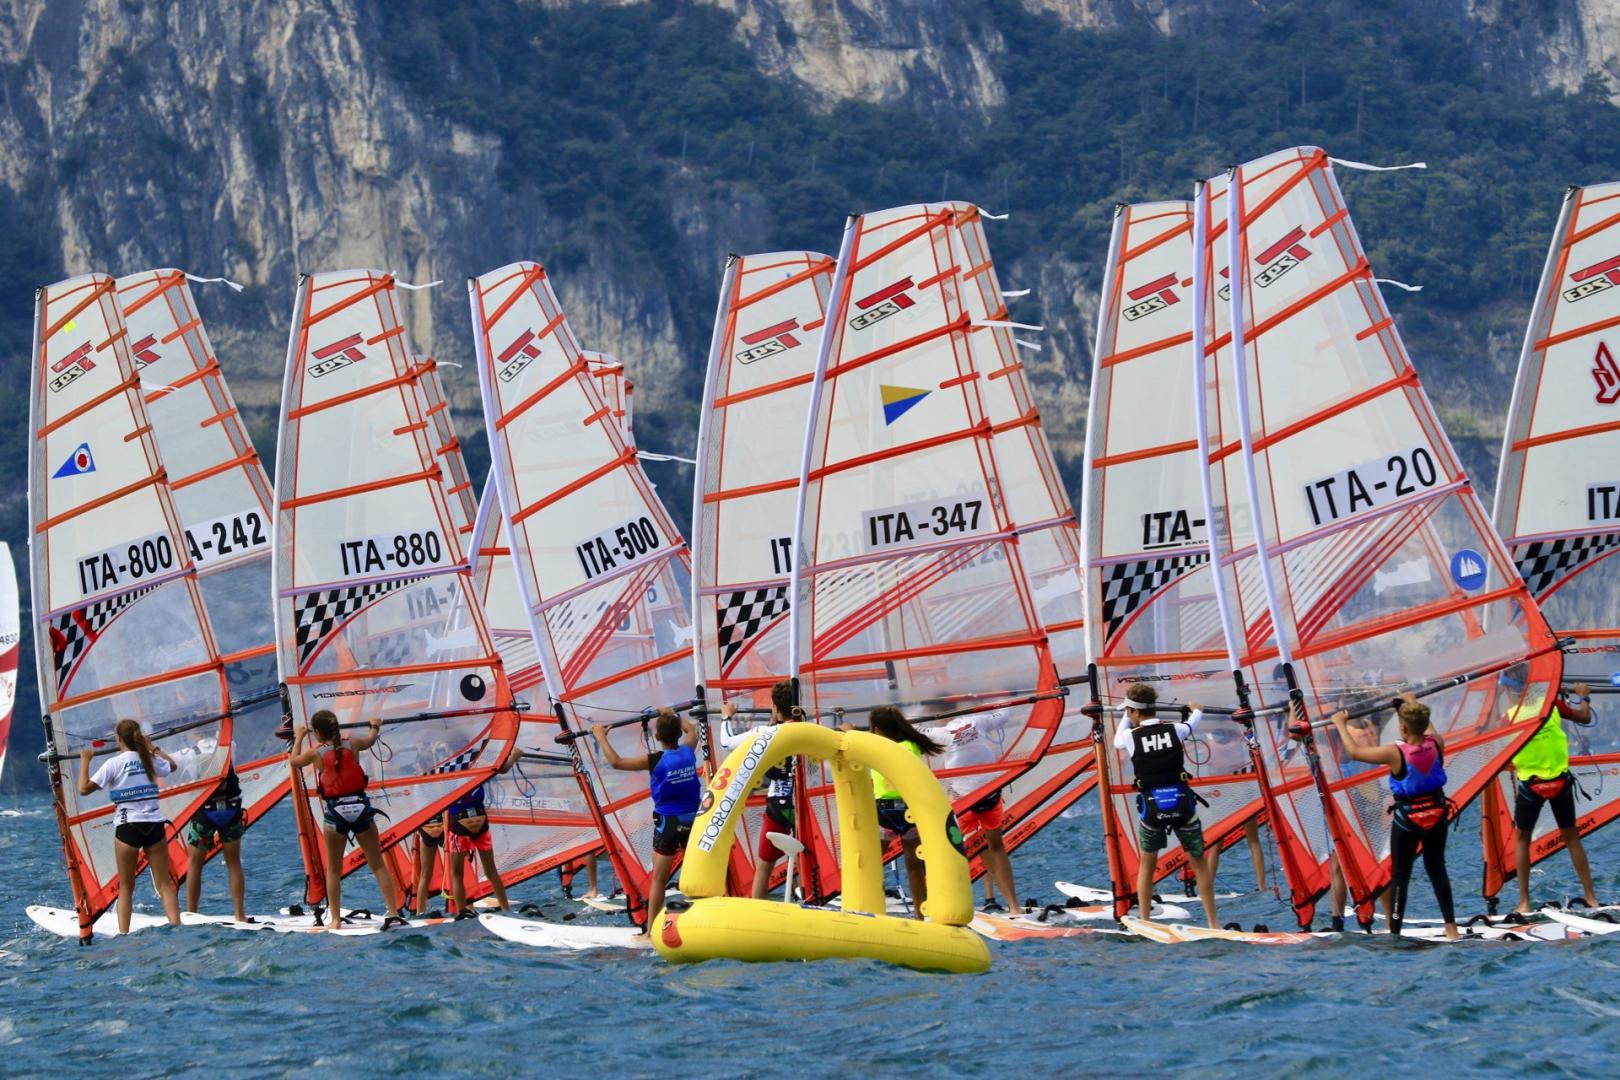 Italiani giovanili singoli: Optimist a Malcesine e windsurf a Torbole - day 1